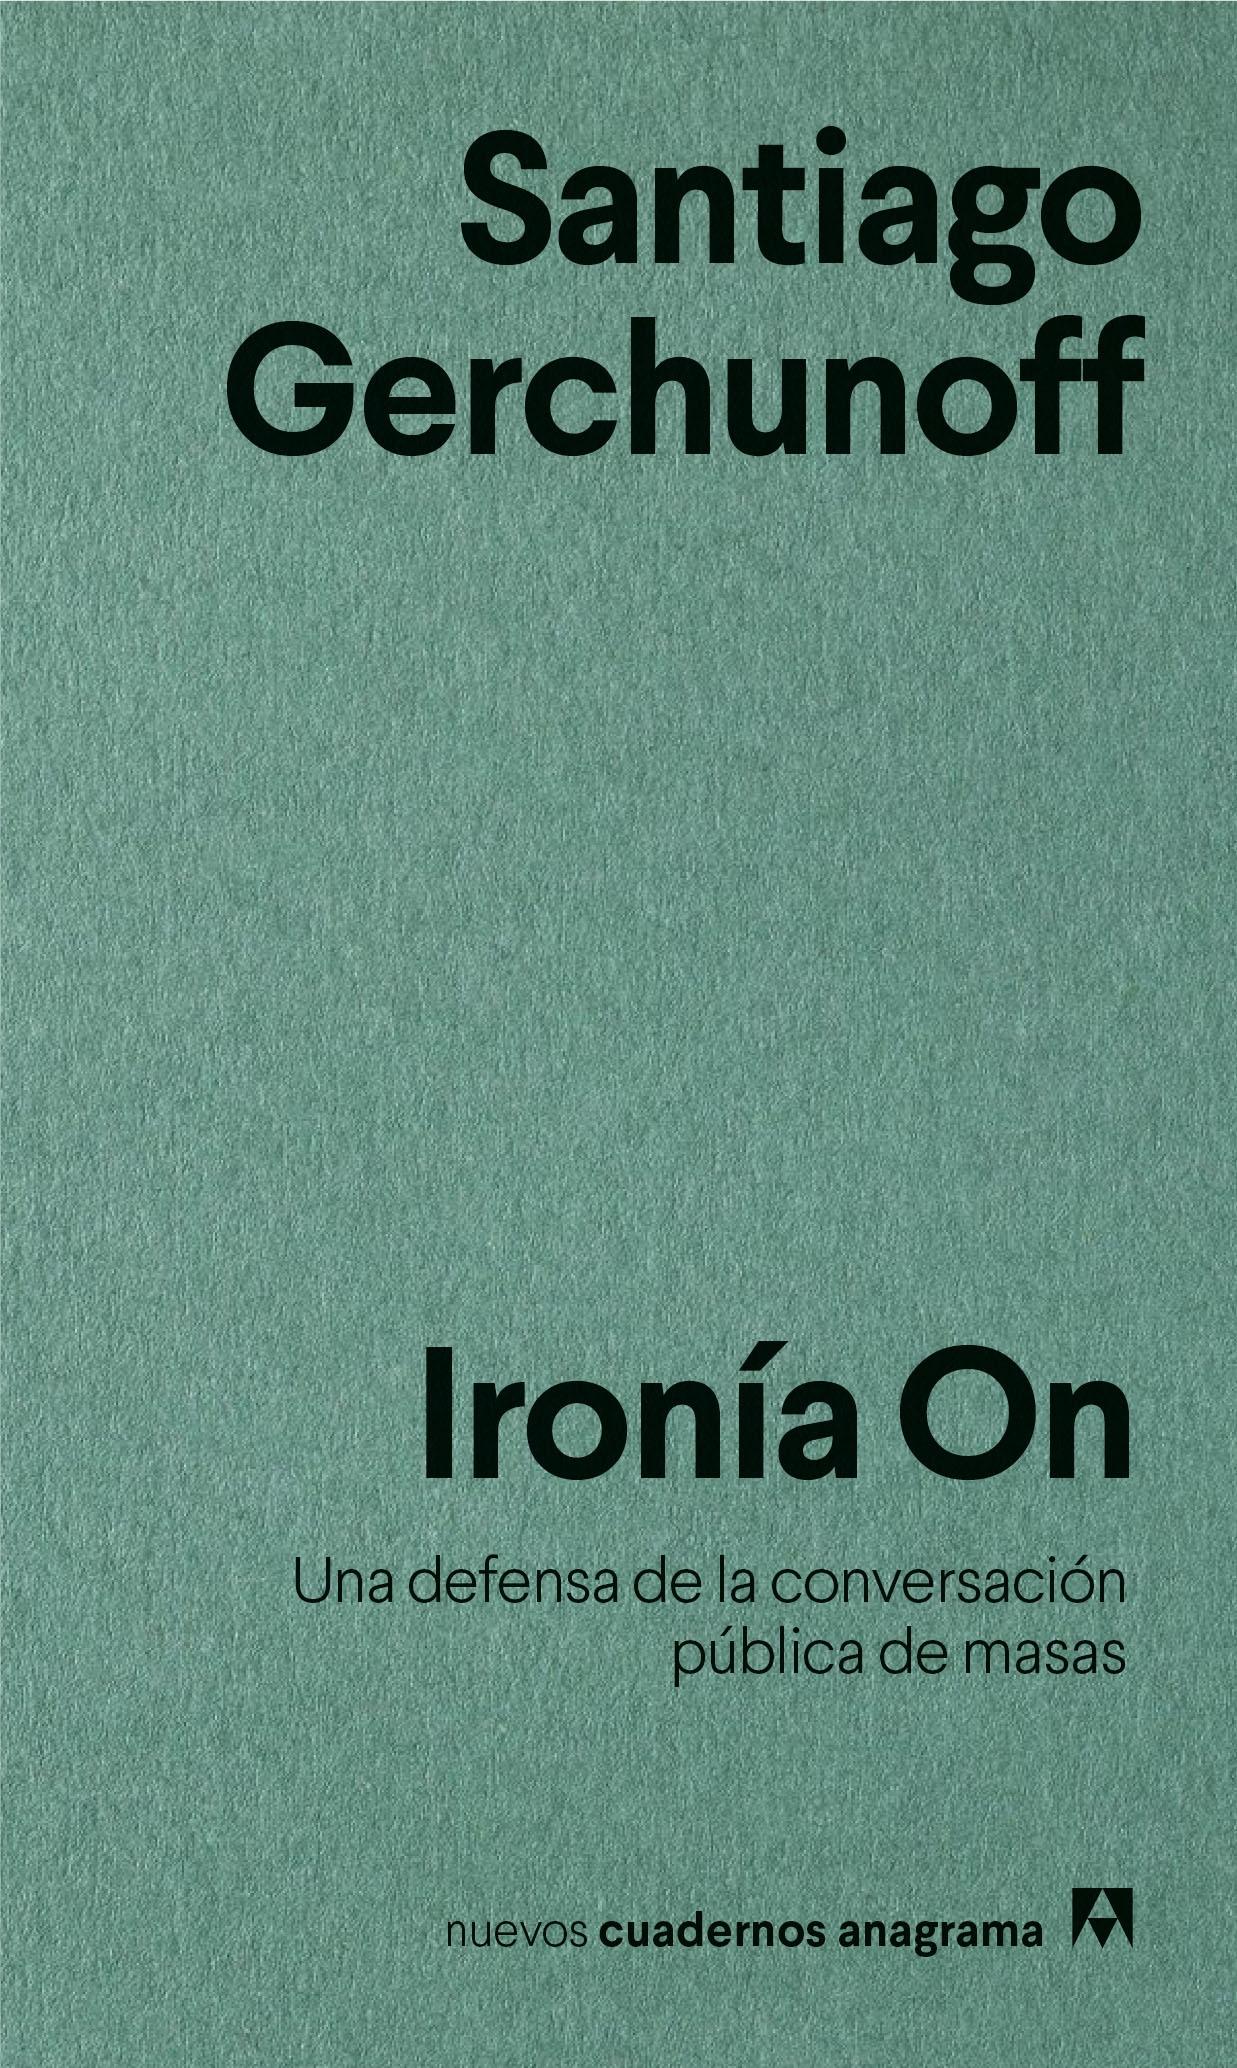 IRONIA ON "UNA DEFENSA DE LA CONVERSACION PUBLICA DE MASAS"